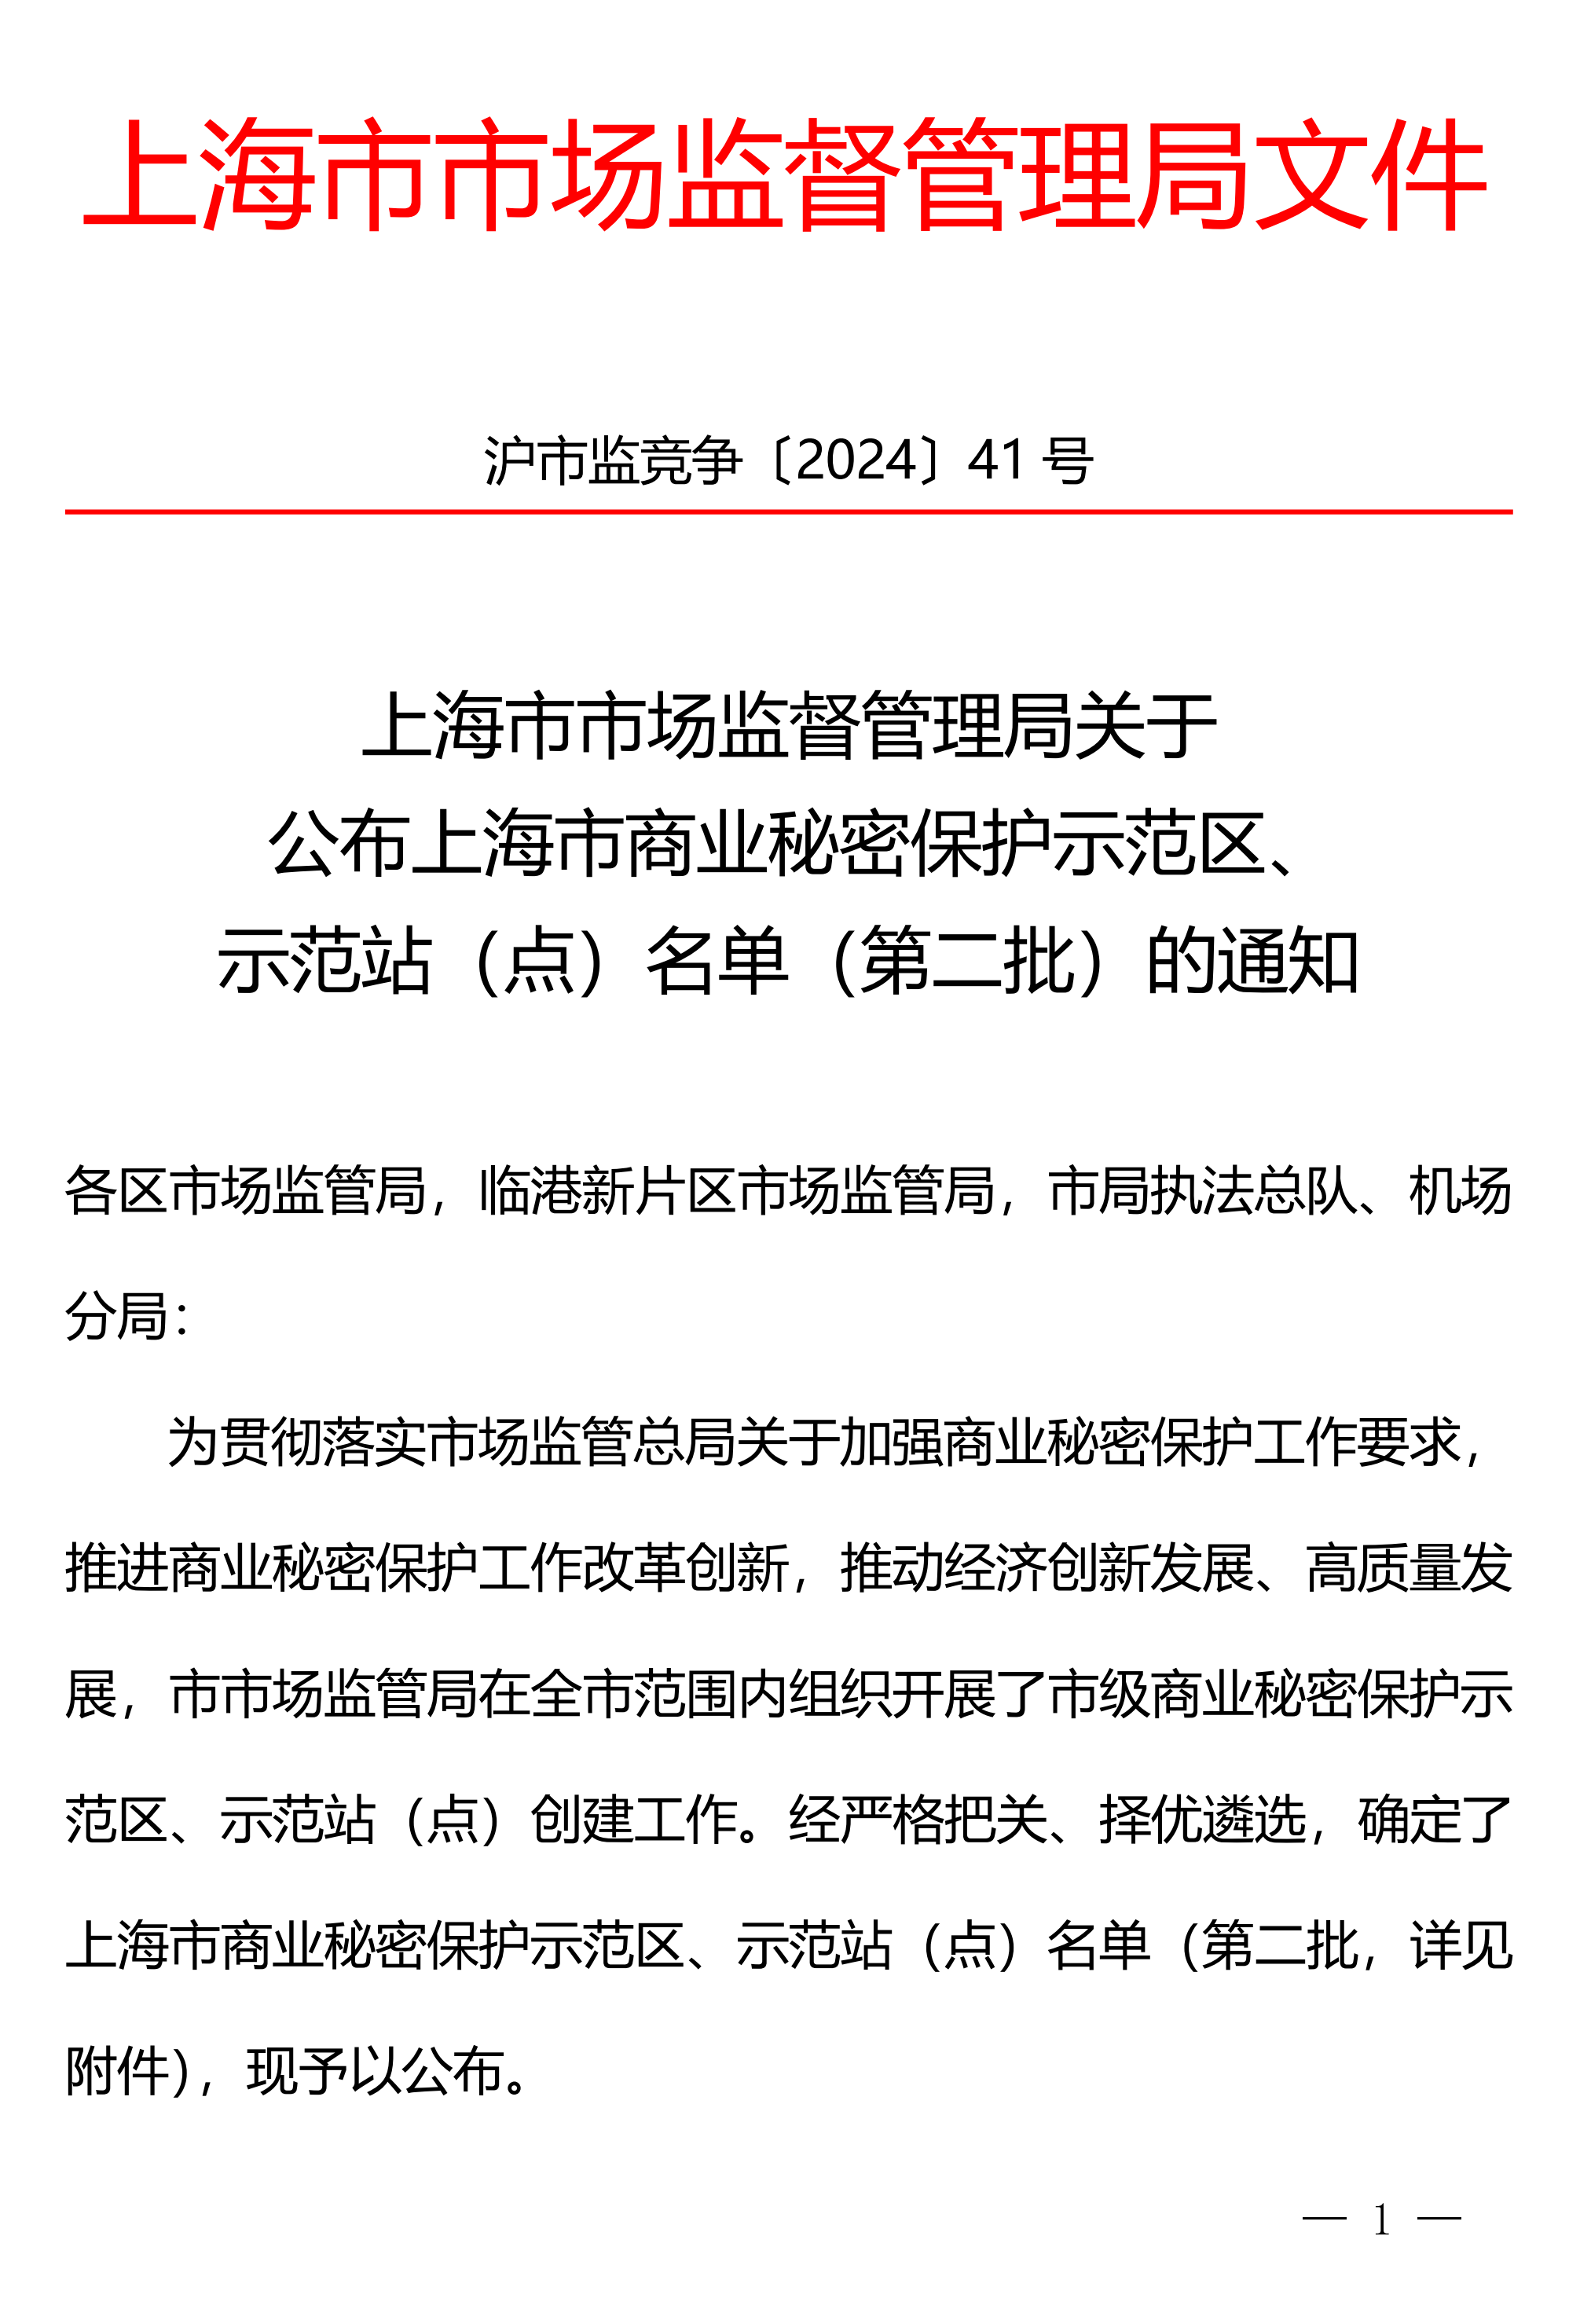 上技所入选第二批上海市商业秘密保护示范站